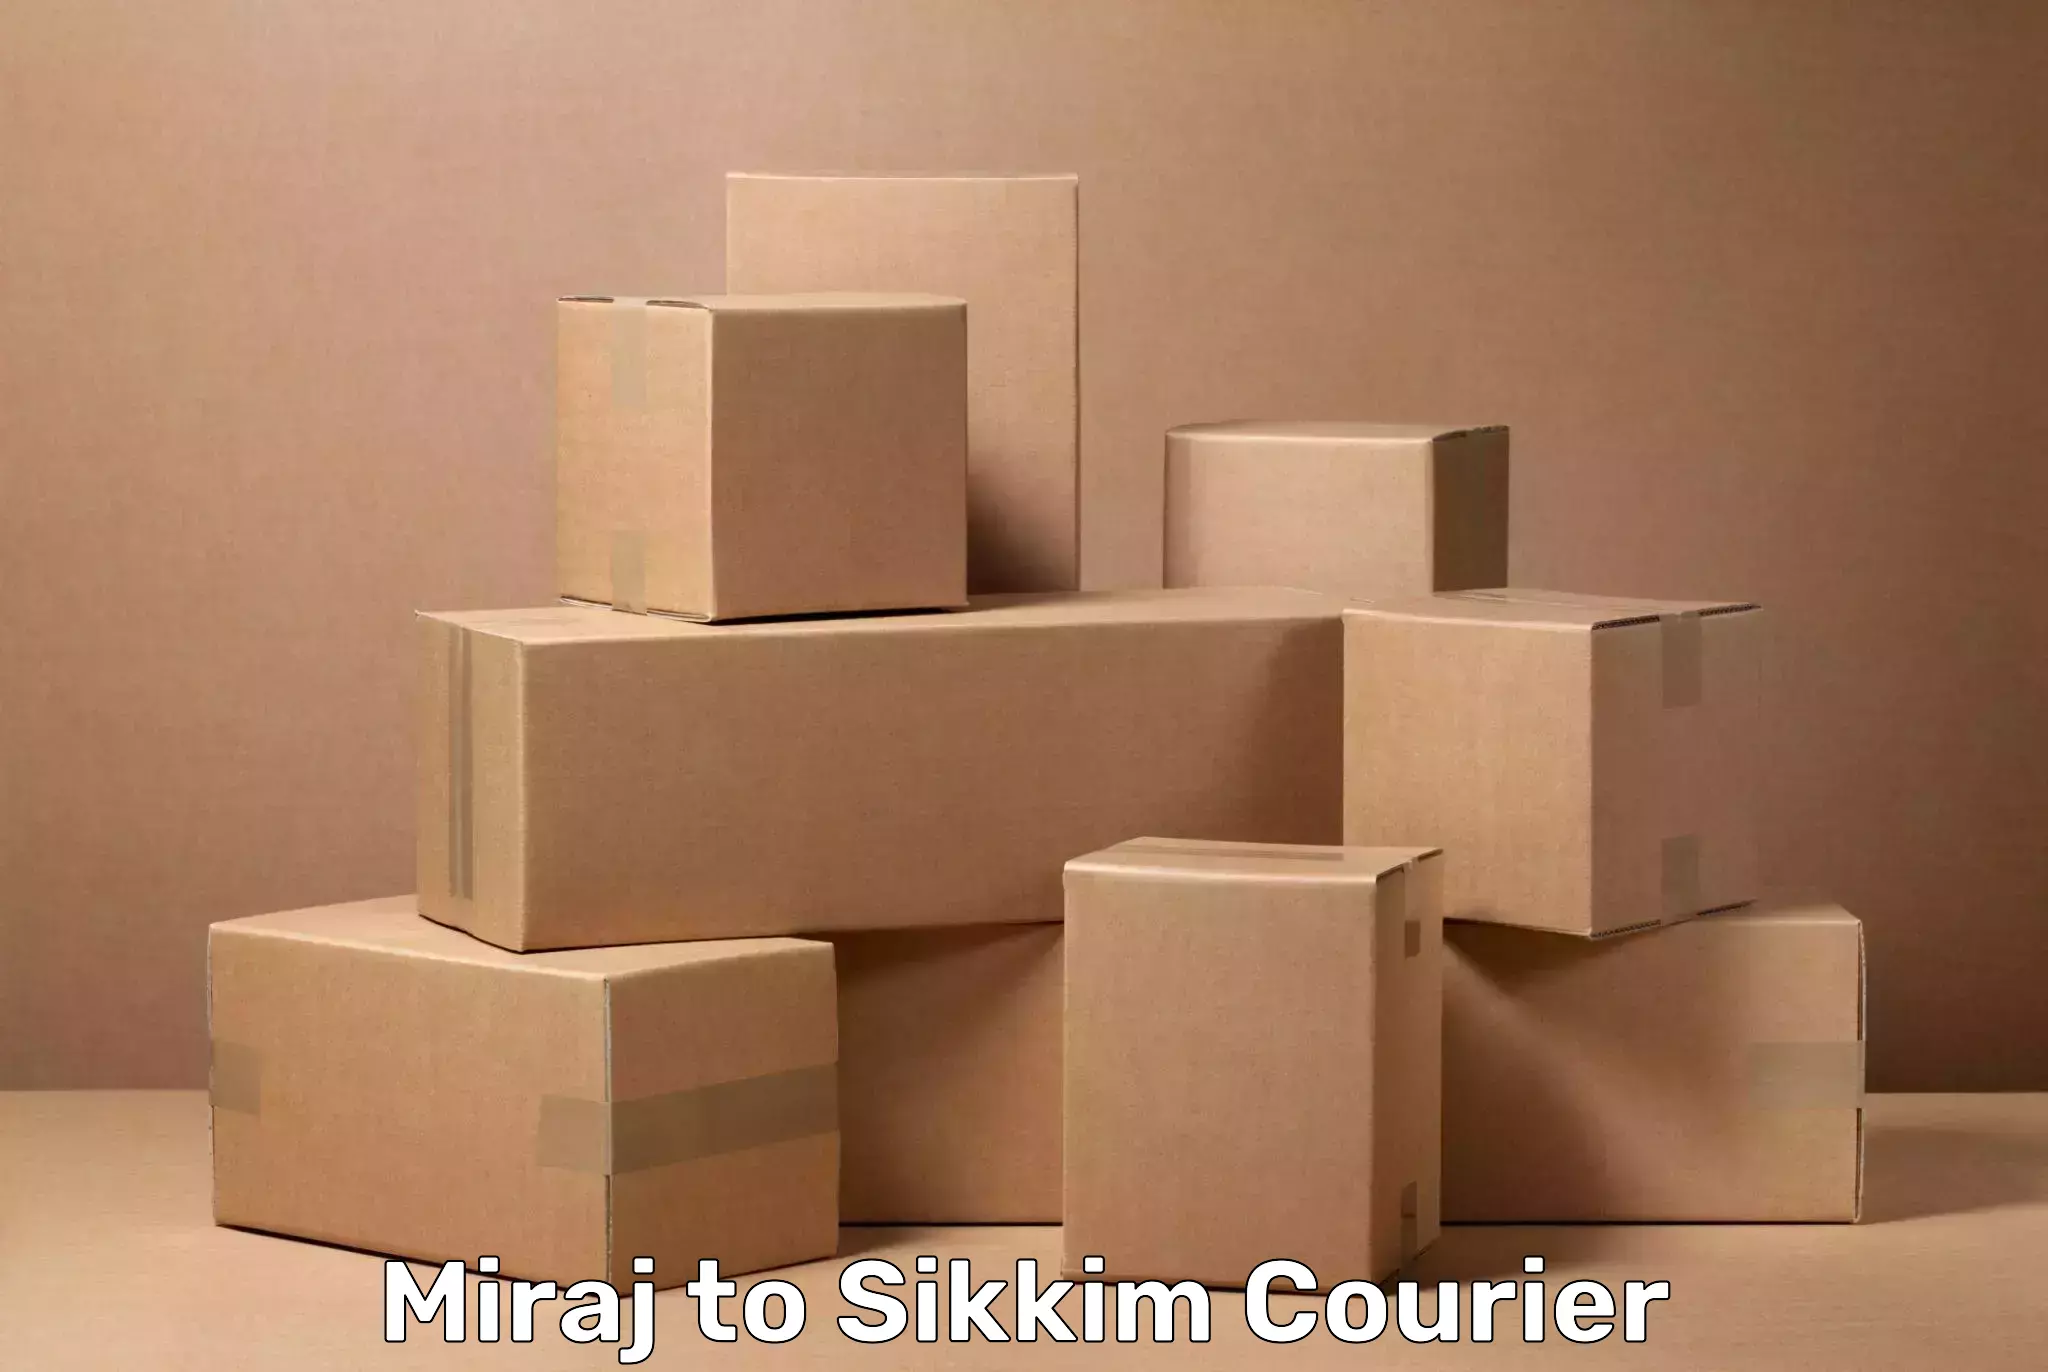 Luggage shipment specialists Miraj to Sikkim